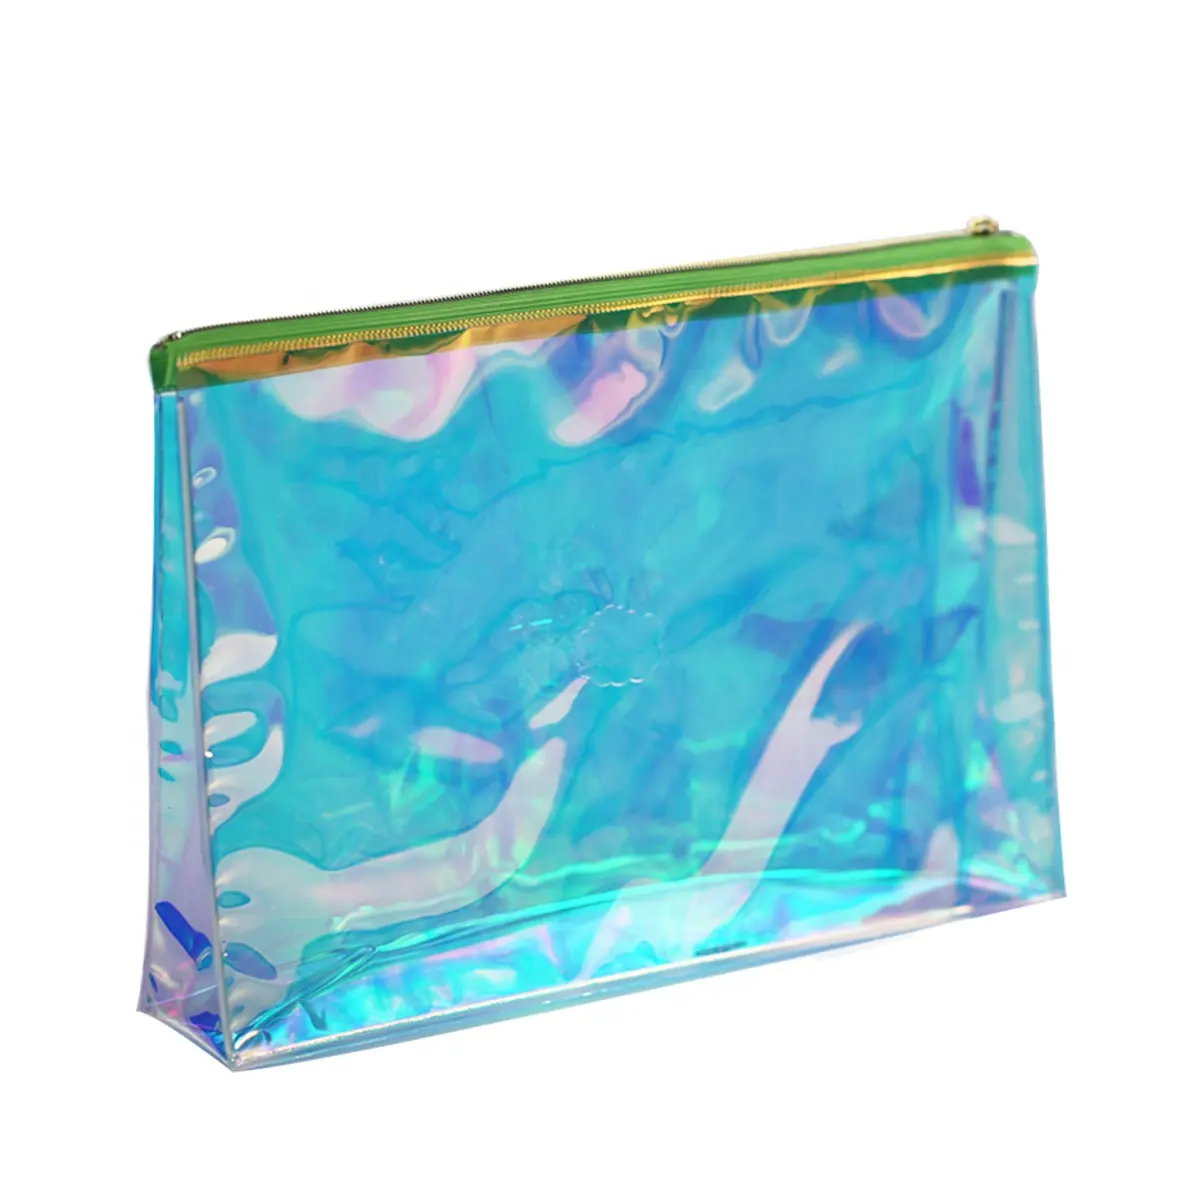 Marsupio in PVC trasparente eco-friendly confezione costumi da bagno borse eva borse carine slider con cerniera per i vestiti